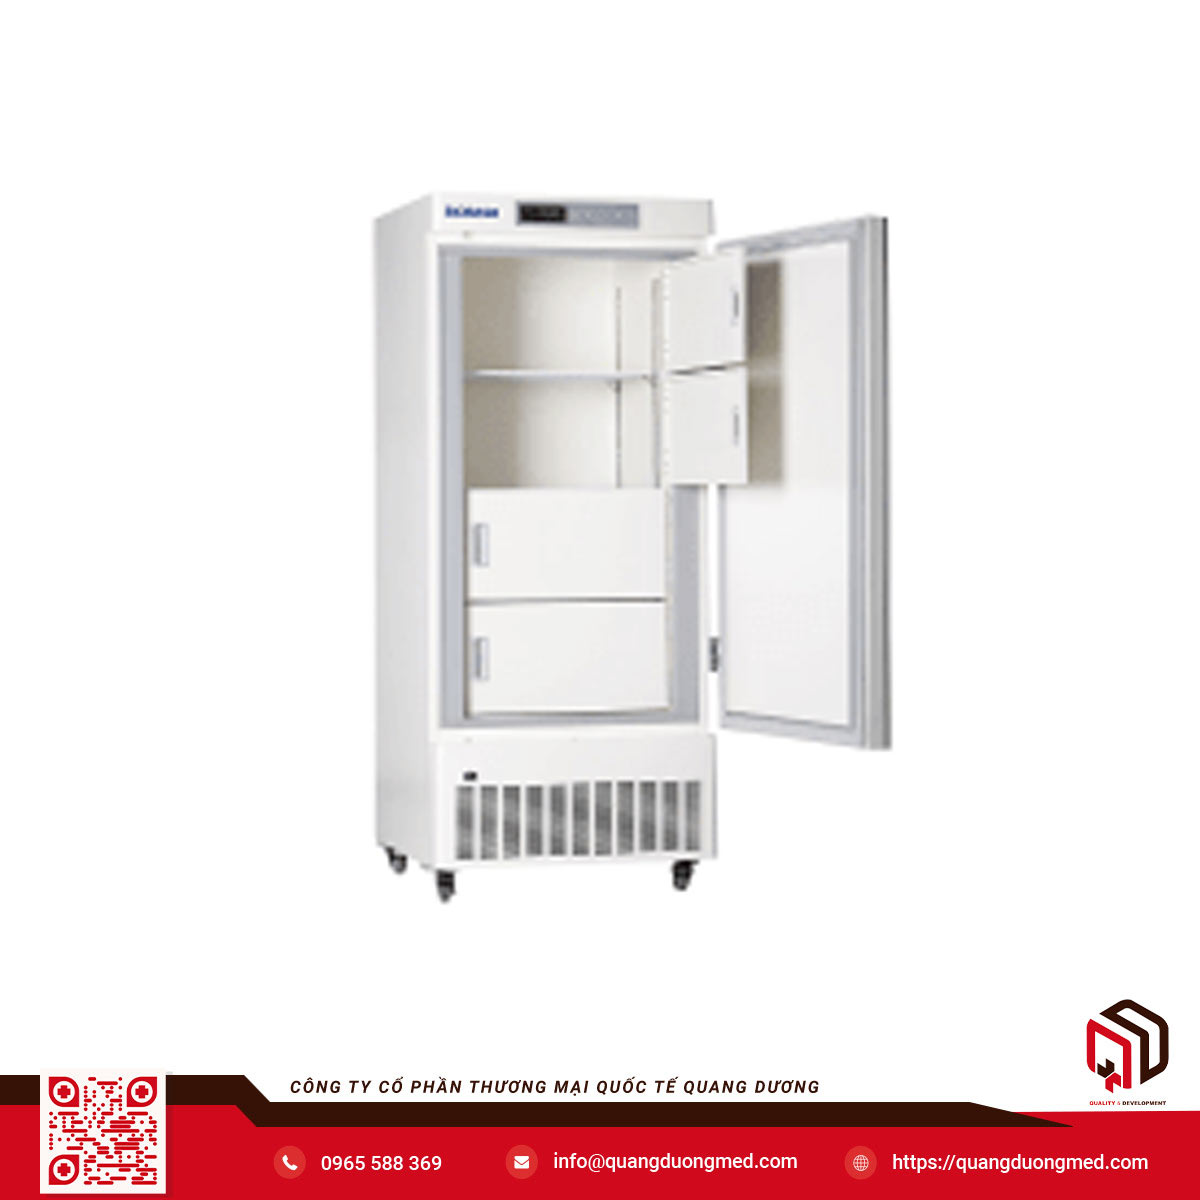 Tủ Lạnh Âm 25 Độ C Kiểu Đứng Biobase 268 | Model: BDF-25V268